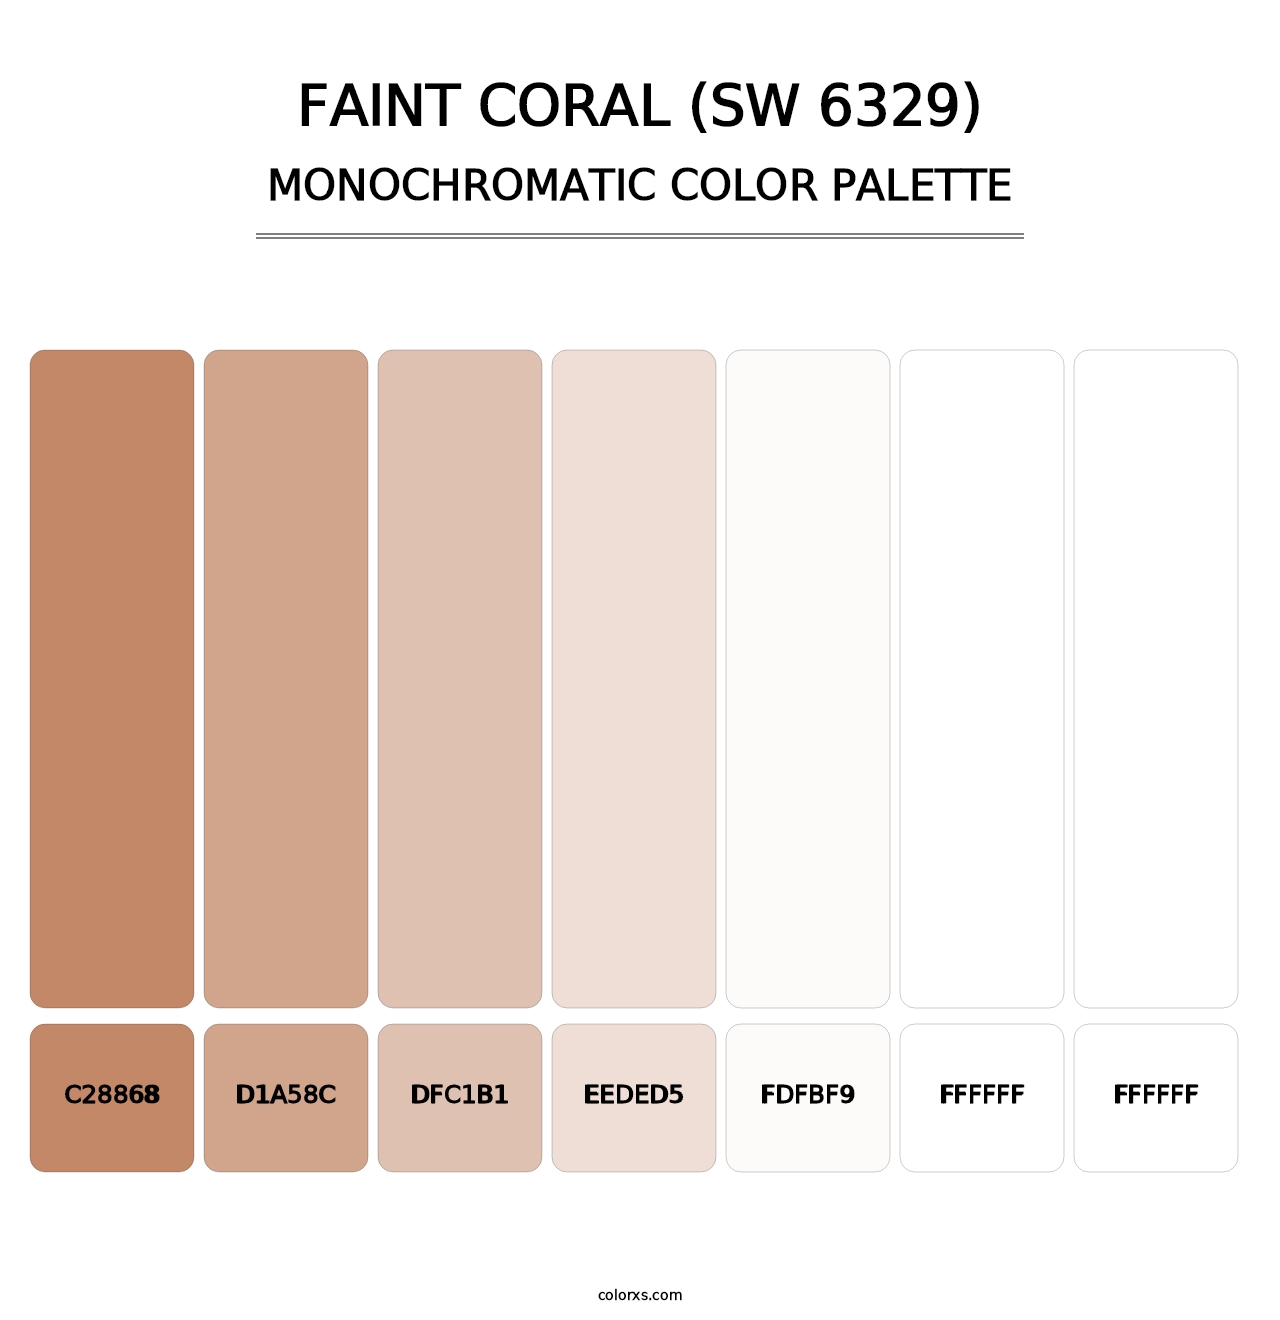 Faint Coral (SW 6329) - Monochromatic Color Palette